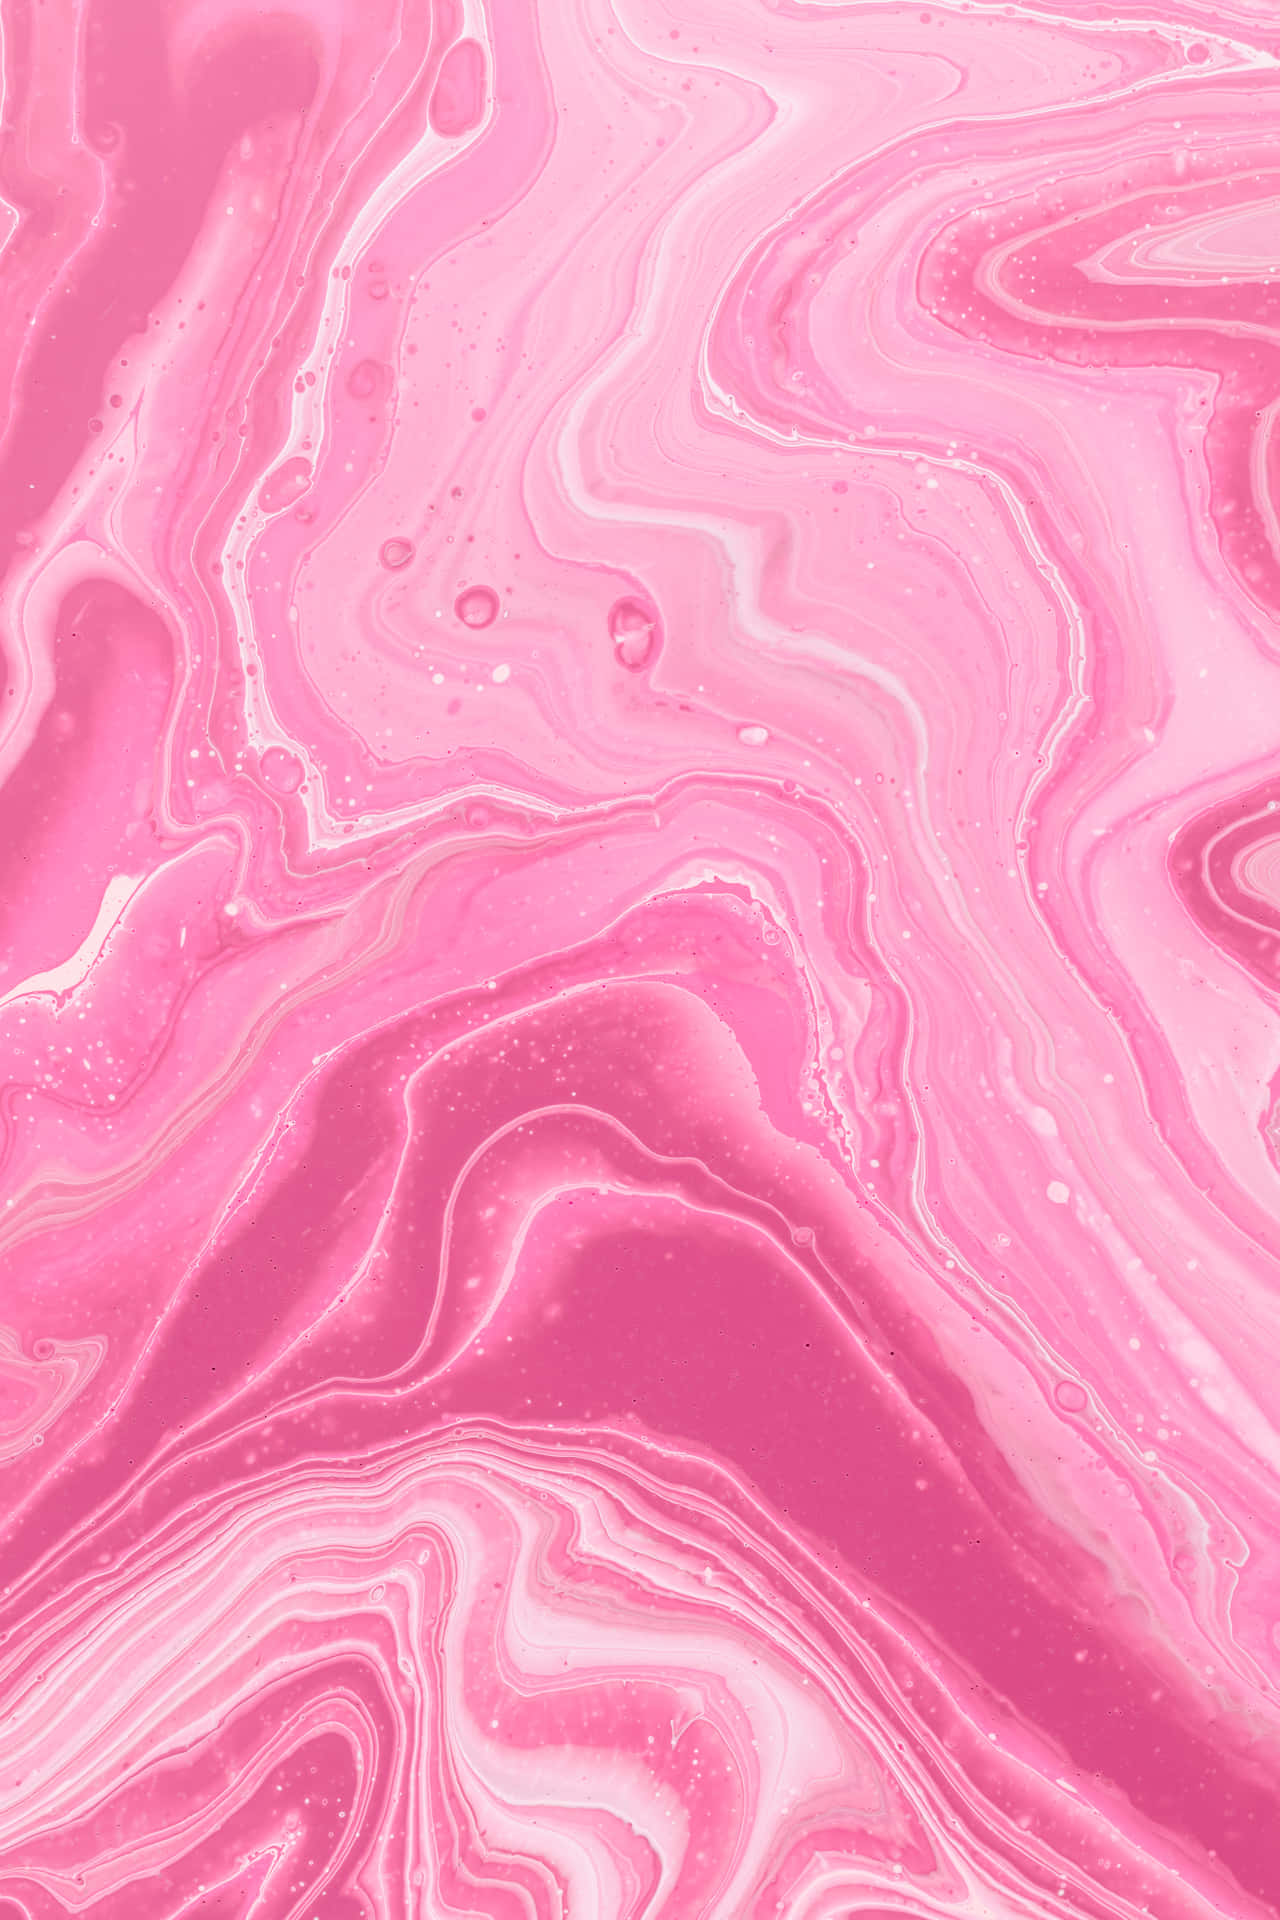 Nyd den søde smag af pink cotton candy Wallpaper